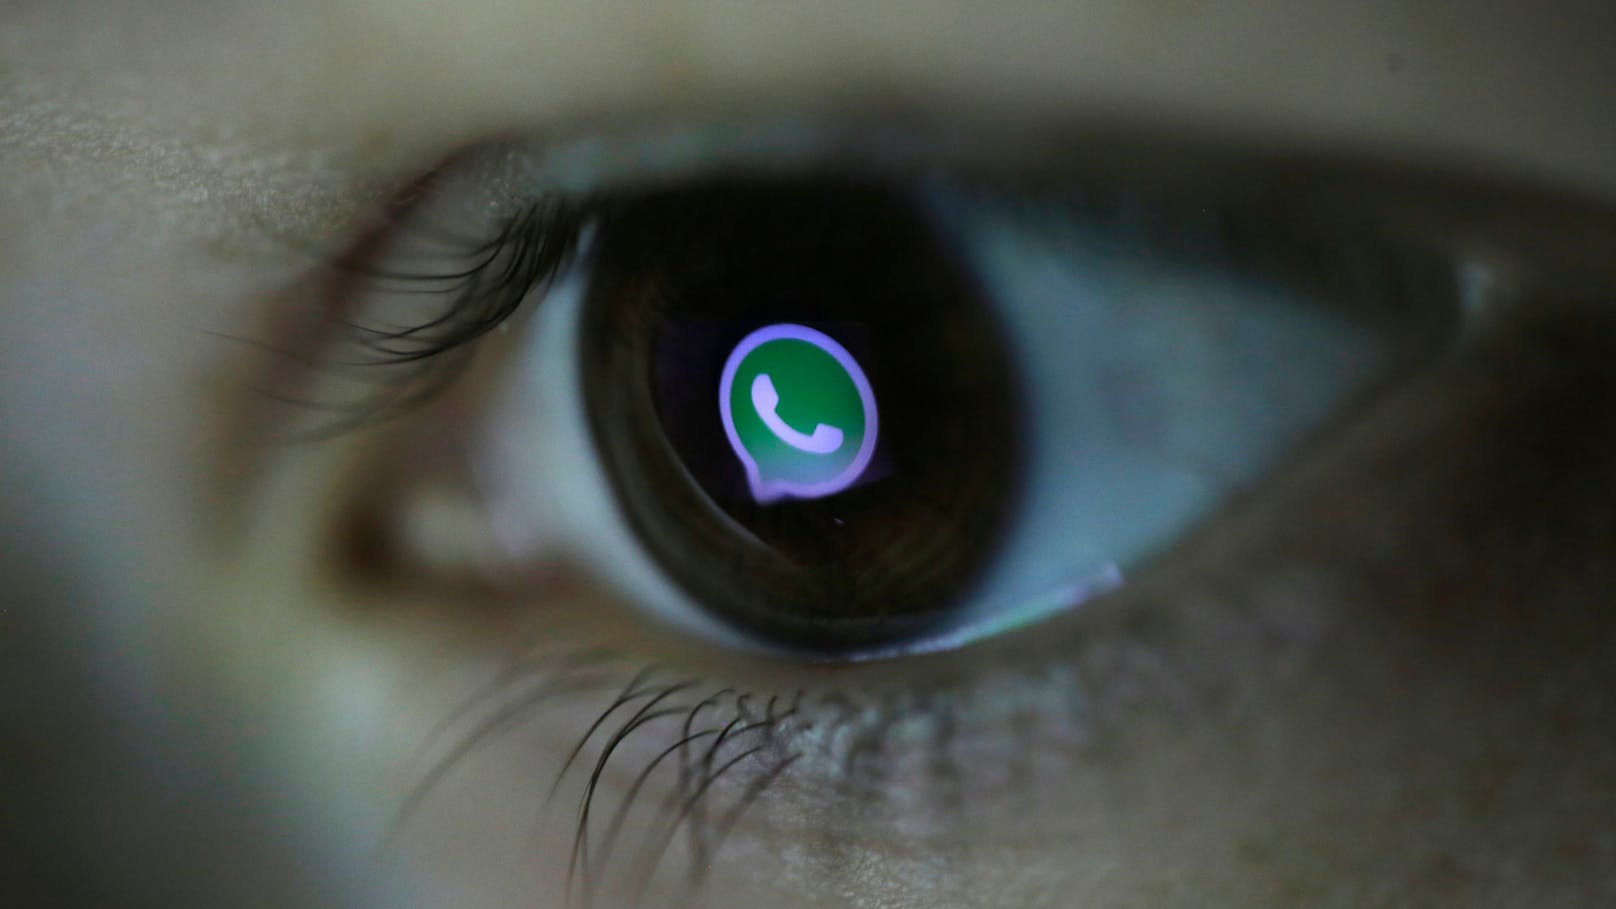 Terror-Experten in Wien – wird WhatsApp bald überwacht?